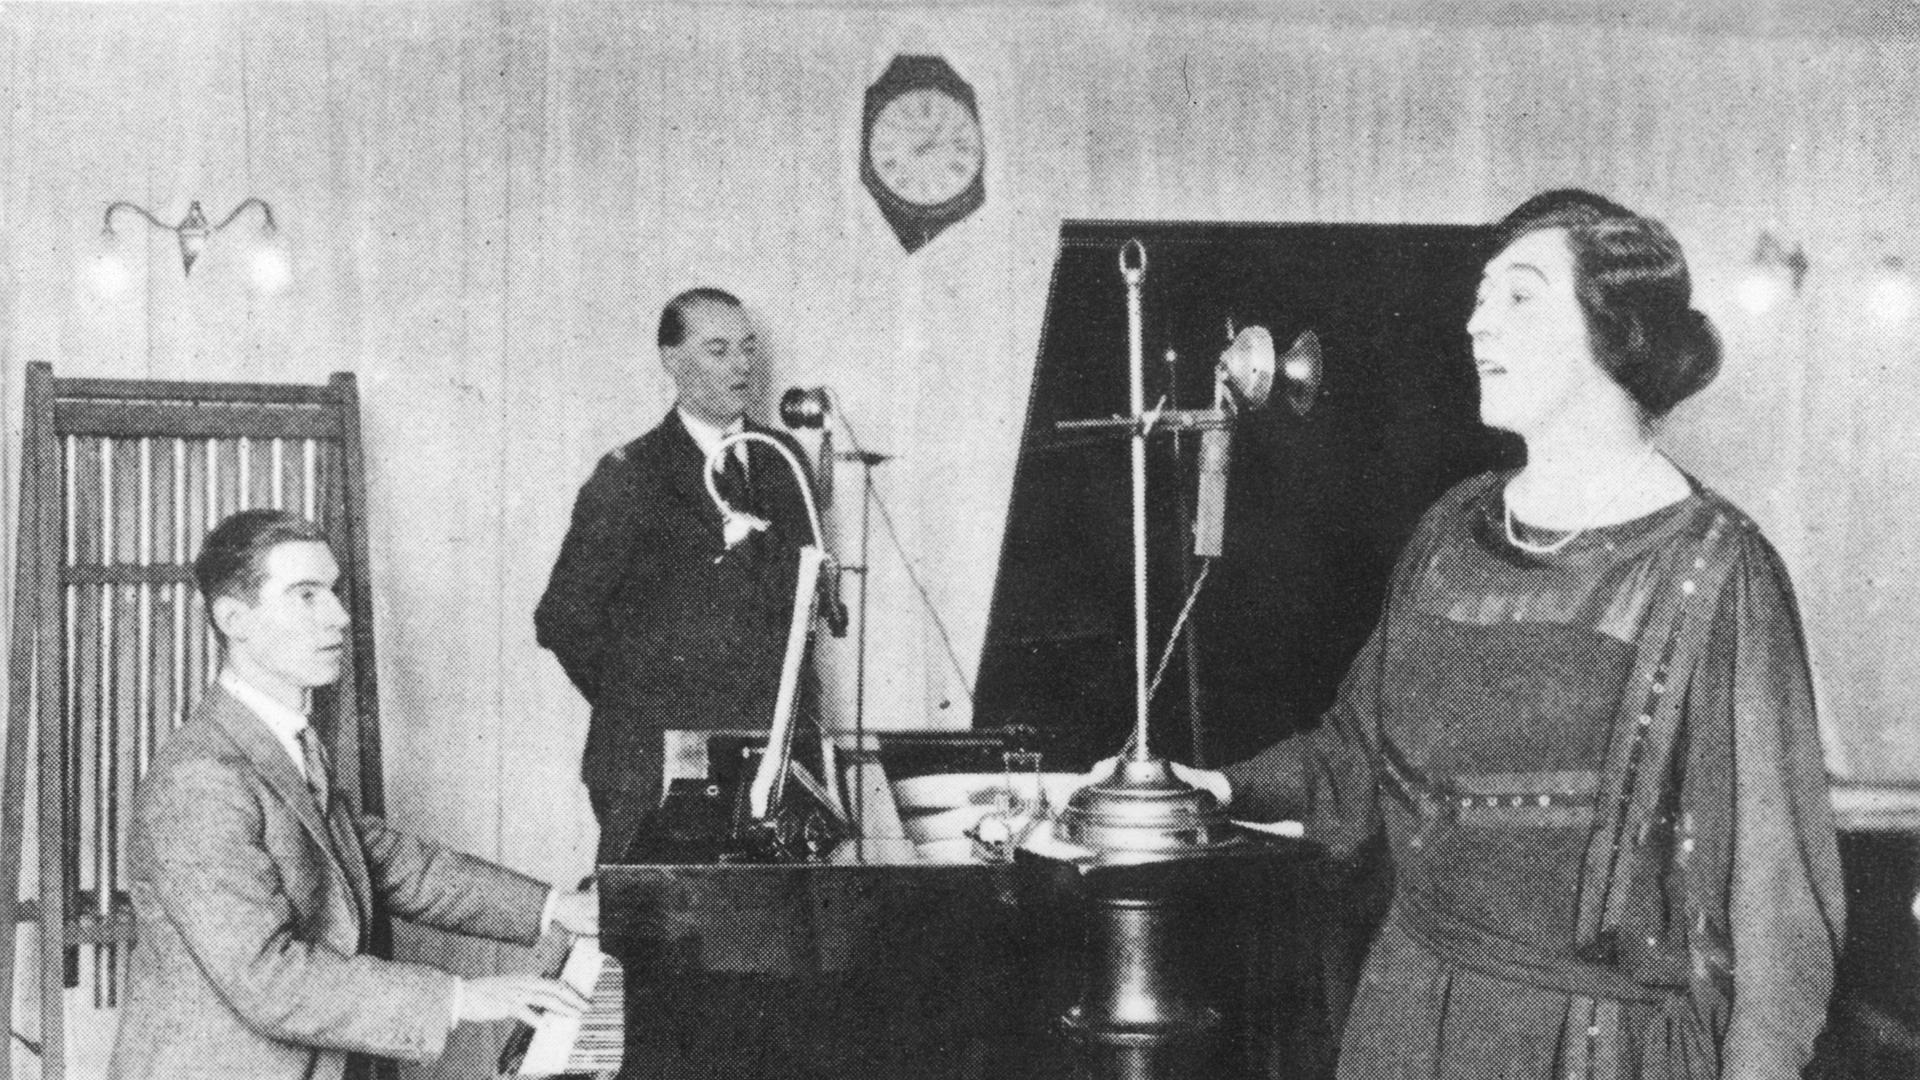 Eine Szene aus den frühen Tagen der BBC - Olive Sturgess und John Huntingdon singen ein Duett im BBC Marconi House - vermutlich im Gründungsjahr1922.